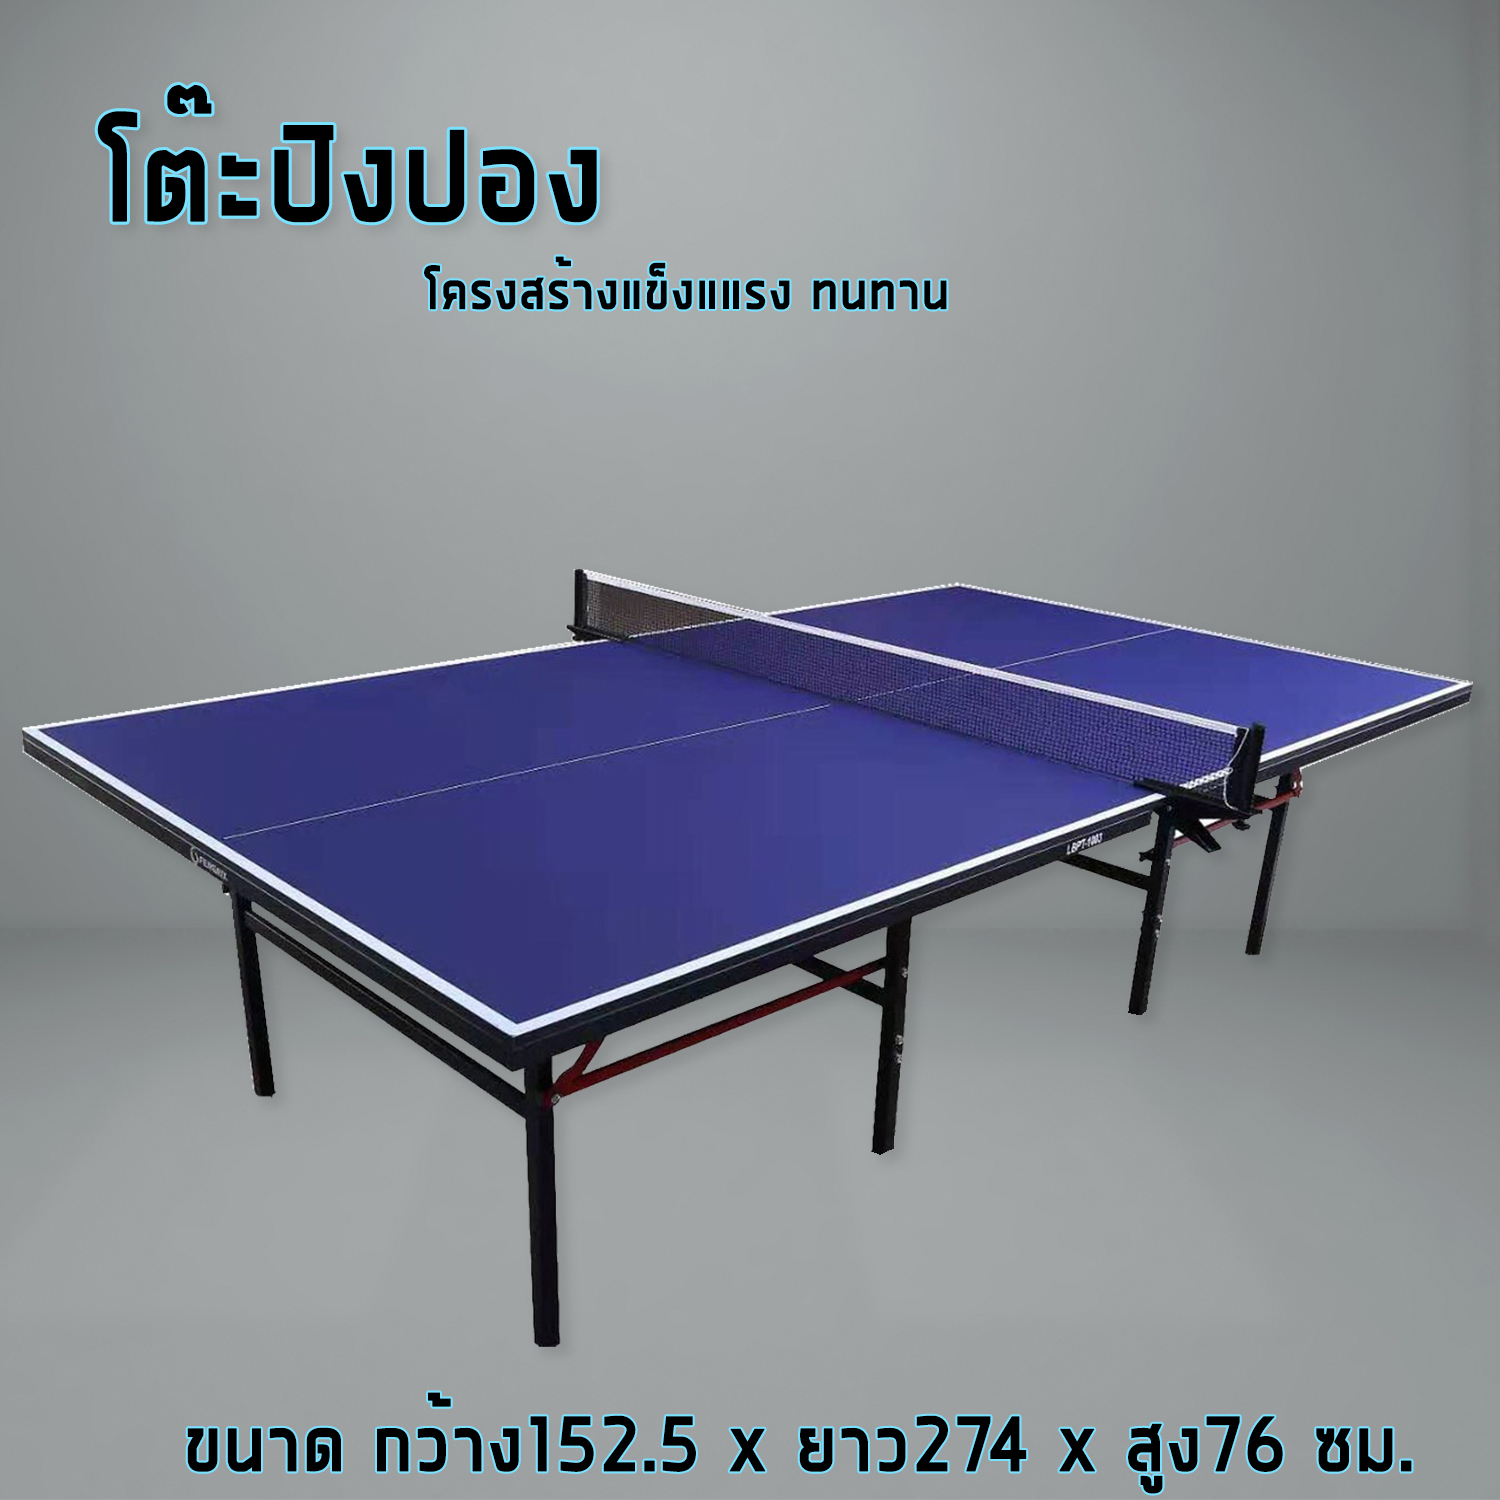 ภาพประกอบคำอธิบาย โต๊ะปิงปอง  โต๊ะปิงปองมาตรฐานแข่งขัน Table Tennis Table